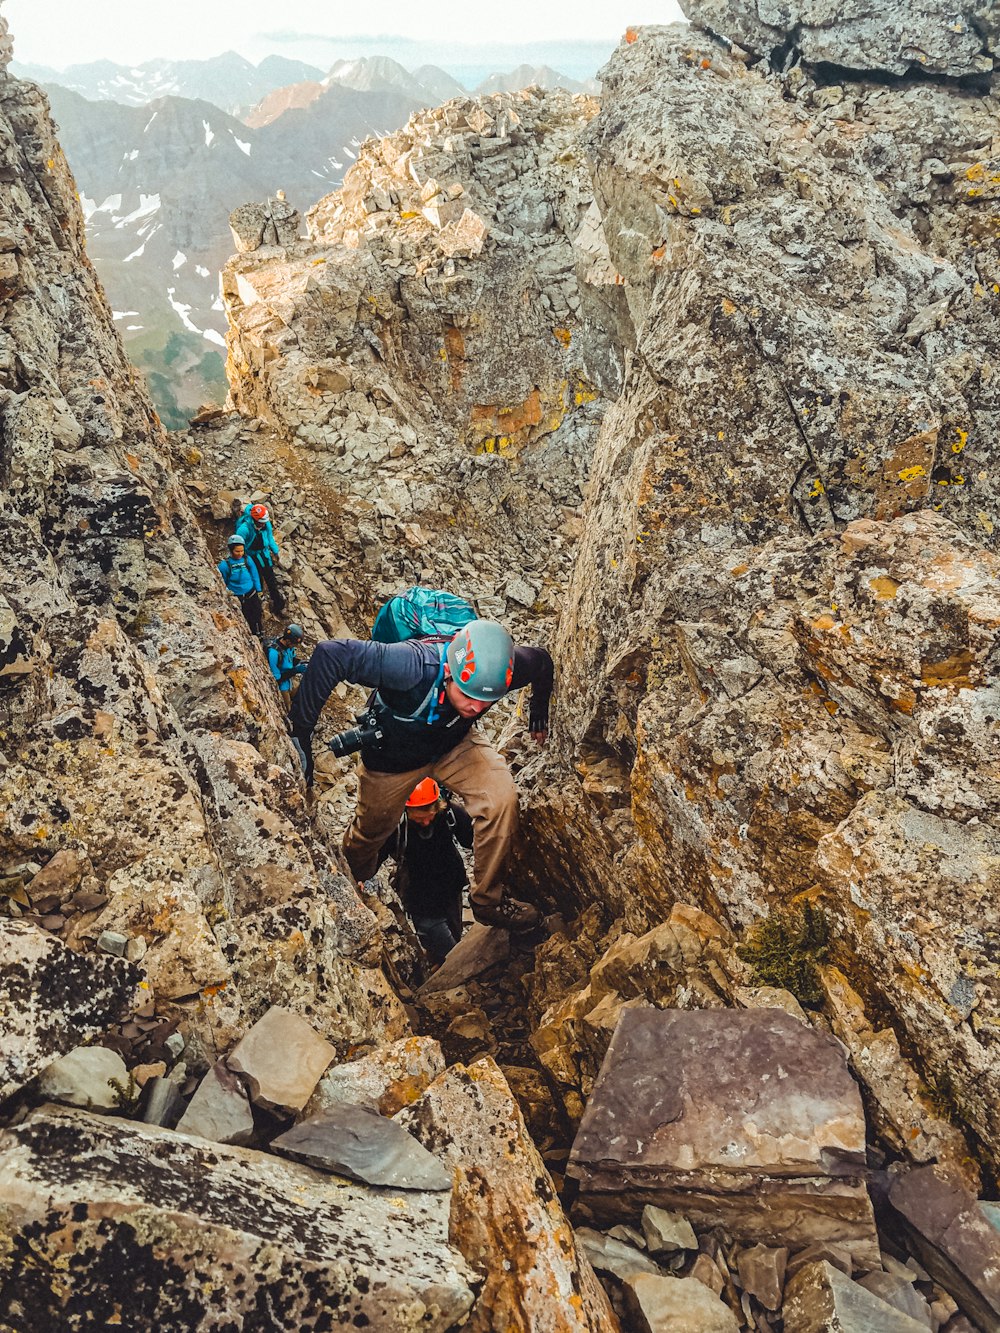 Hombre con chaqueta negra y mochila azul escalando en la montaña rocosa durante el día